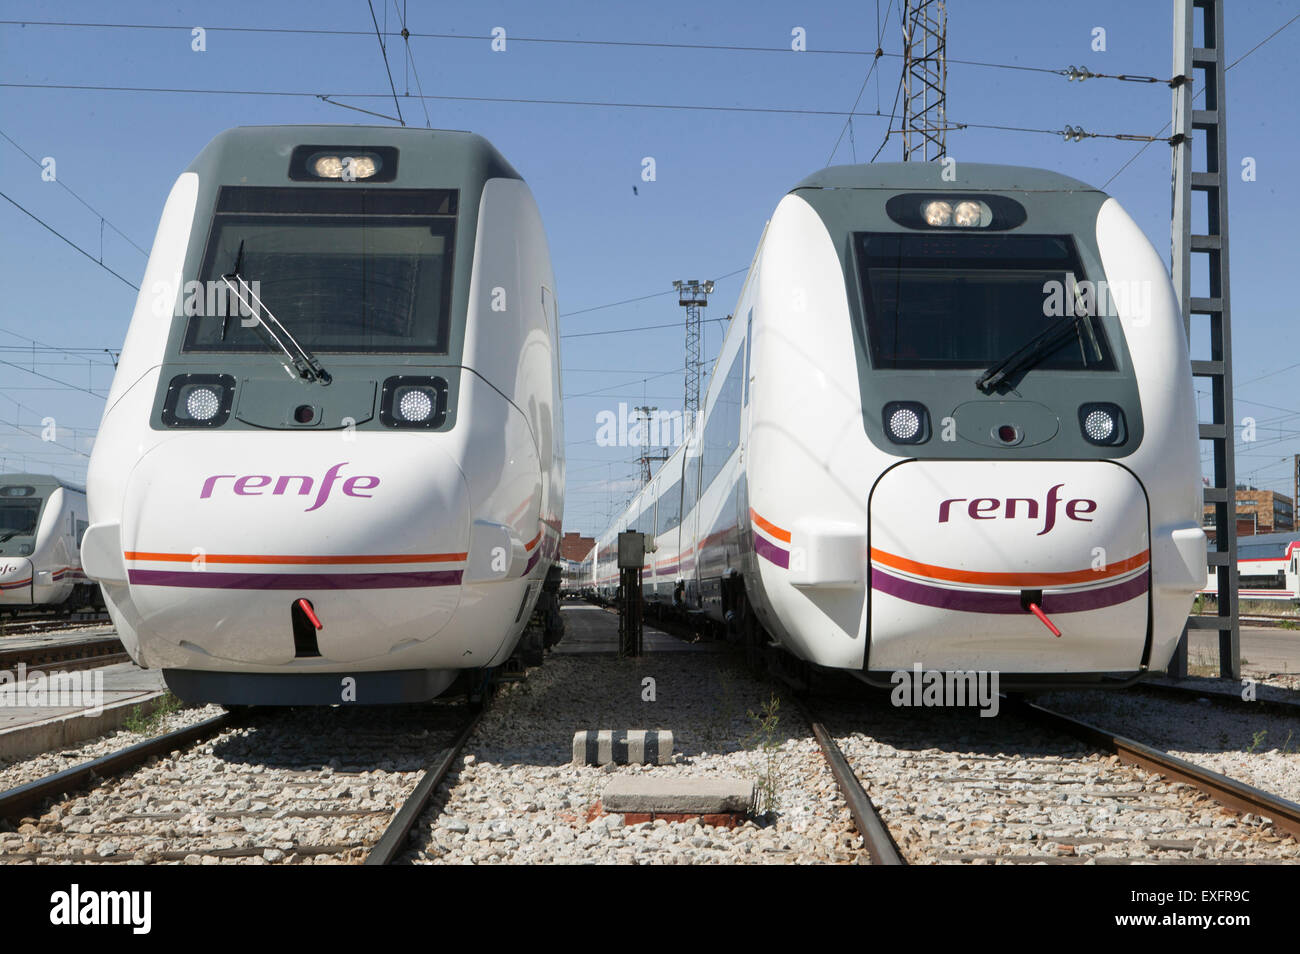 Spanish railway of regional circulation Stock Photo